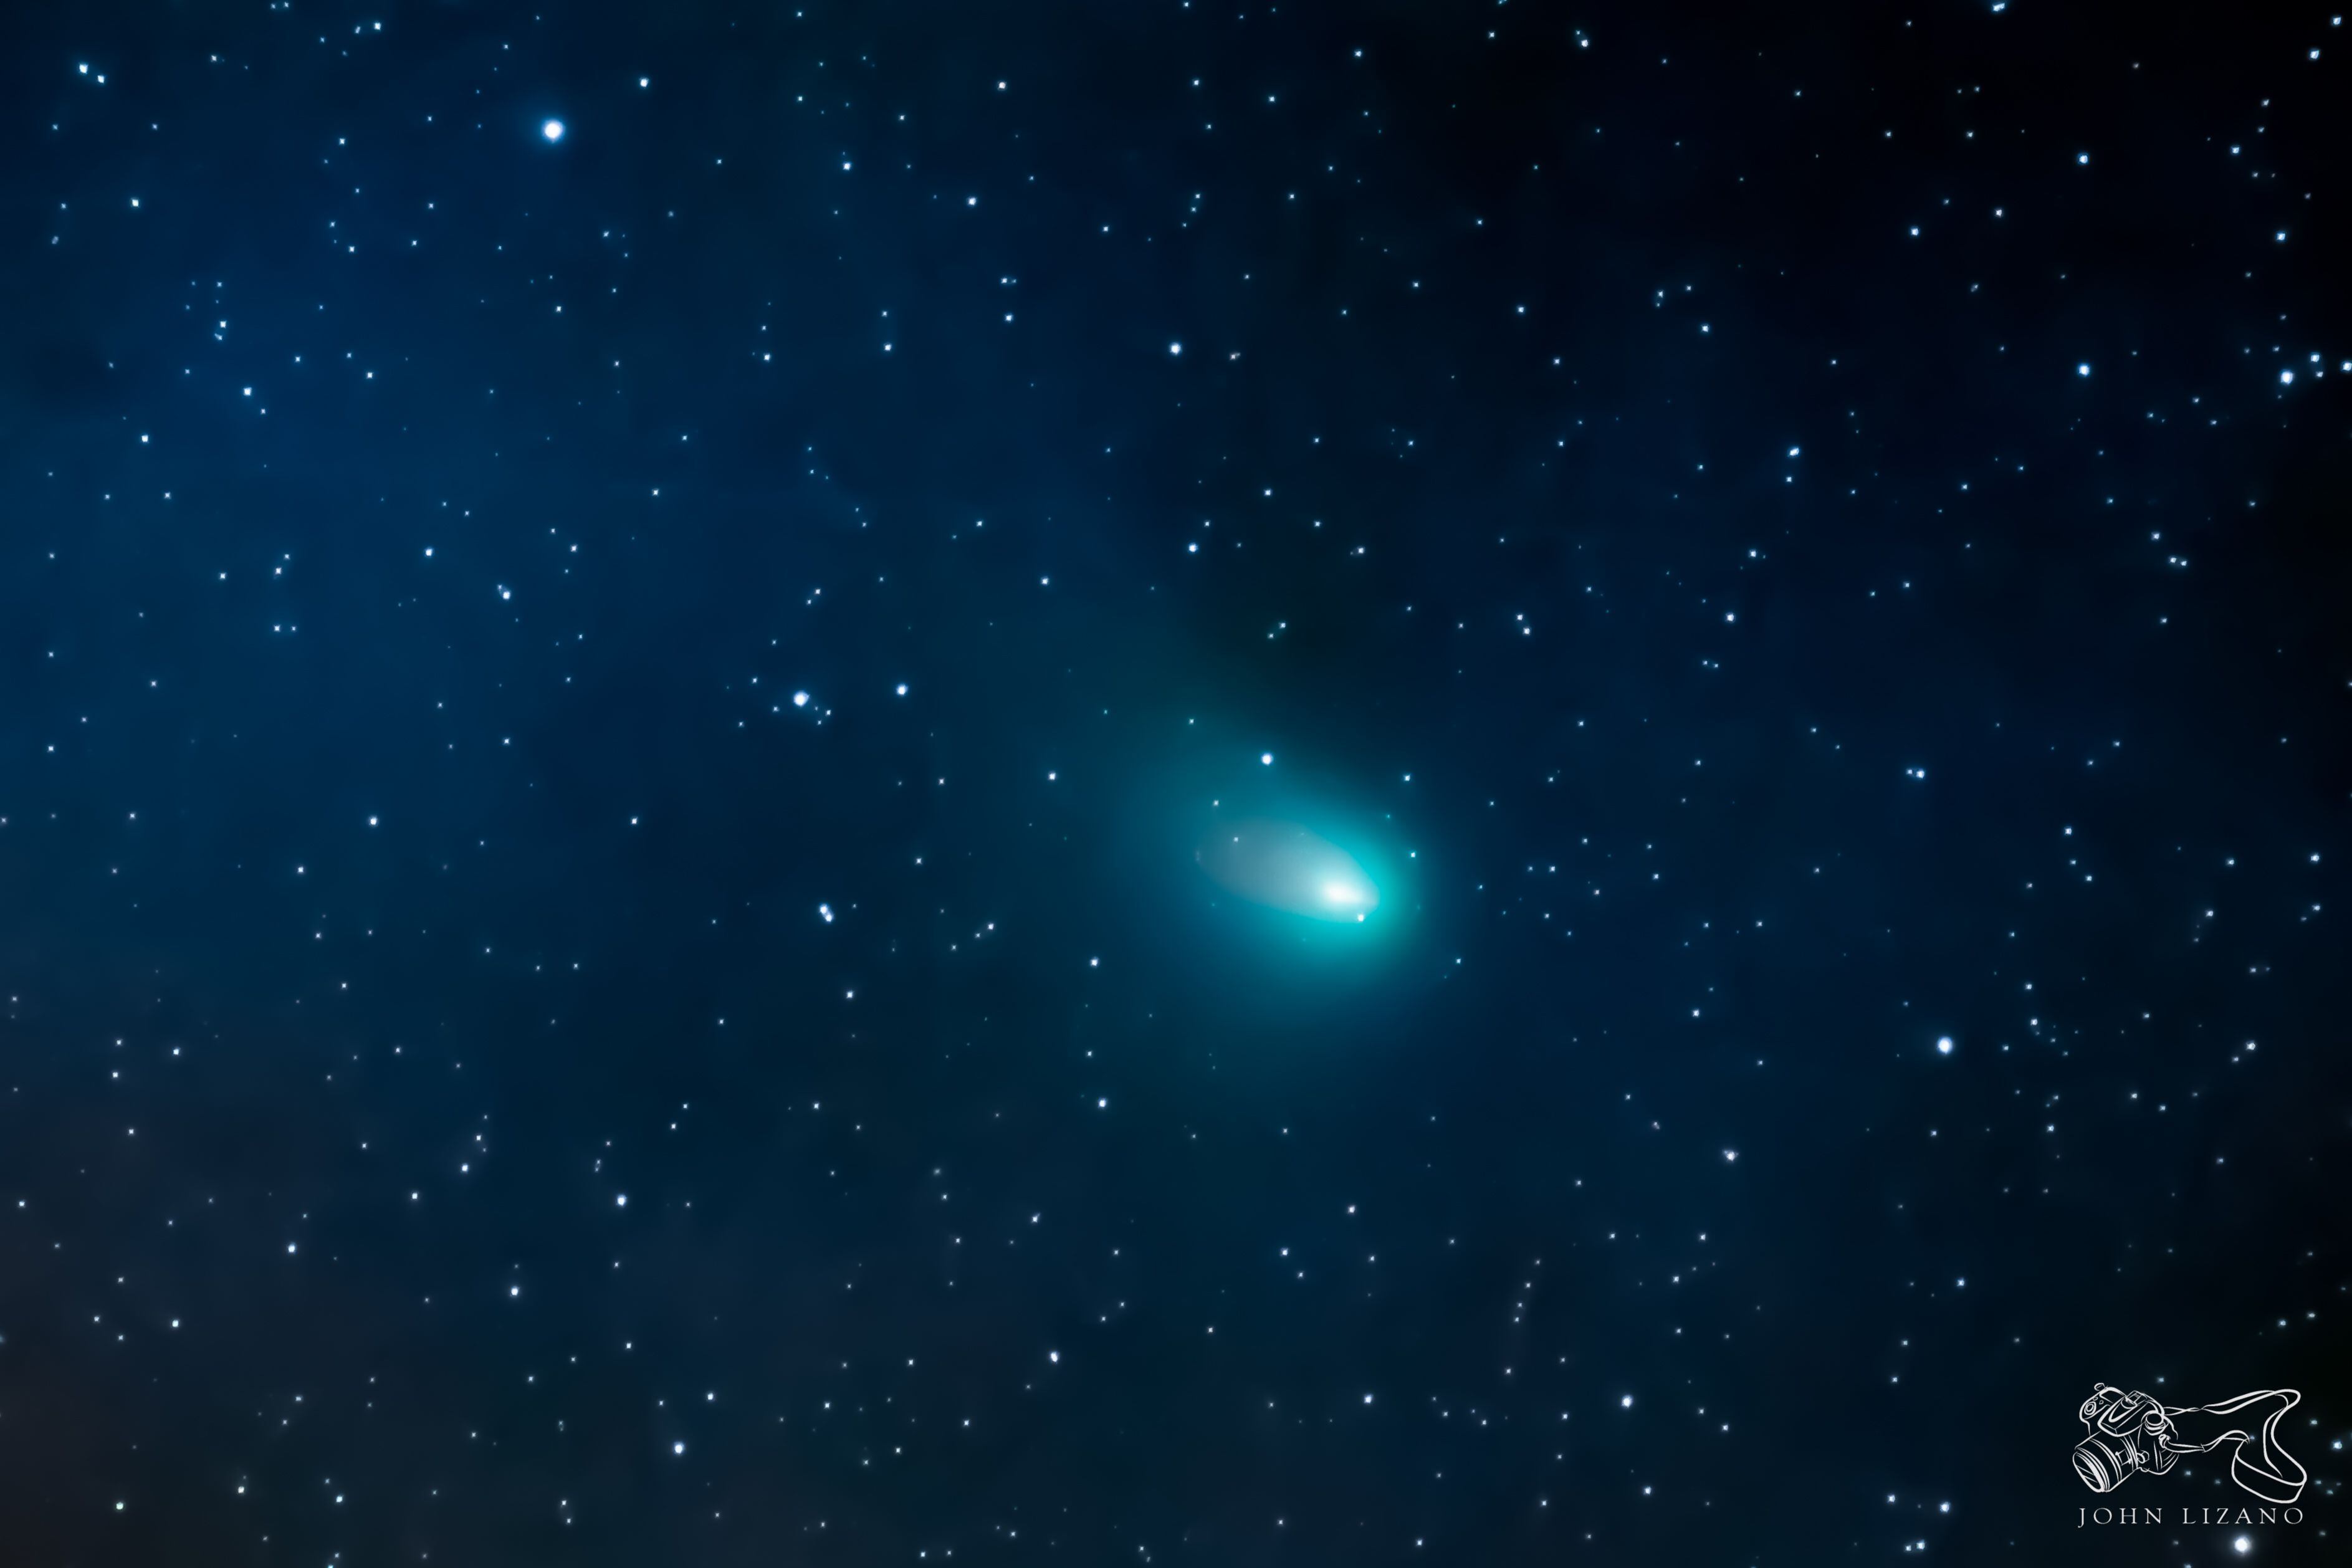 Así se observó el cometa C/2022 E3 (ZTF) este lunes 16 de enero desde el centro de Grecia, Alajuela. Fue retratado con una cámara Canon EOS 80D, una montura Sky Watcher EQM-35 PRO y un telescopio Sky Watcher EvoStar 72ED. Fotografía: Cortesía John Lizano Umaña